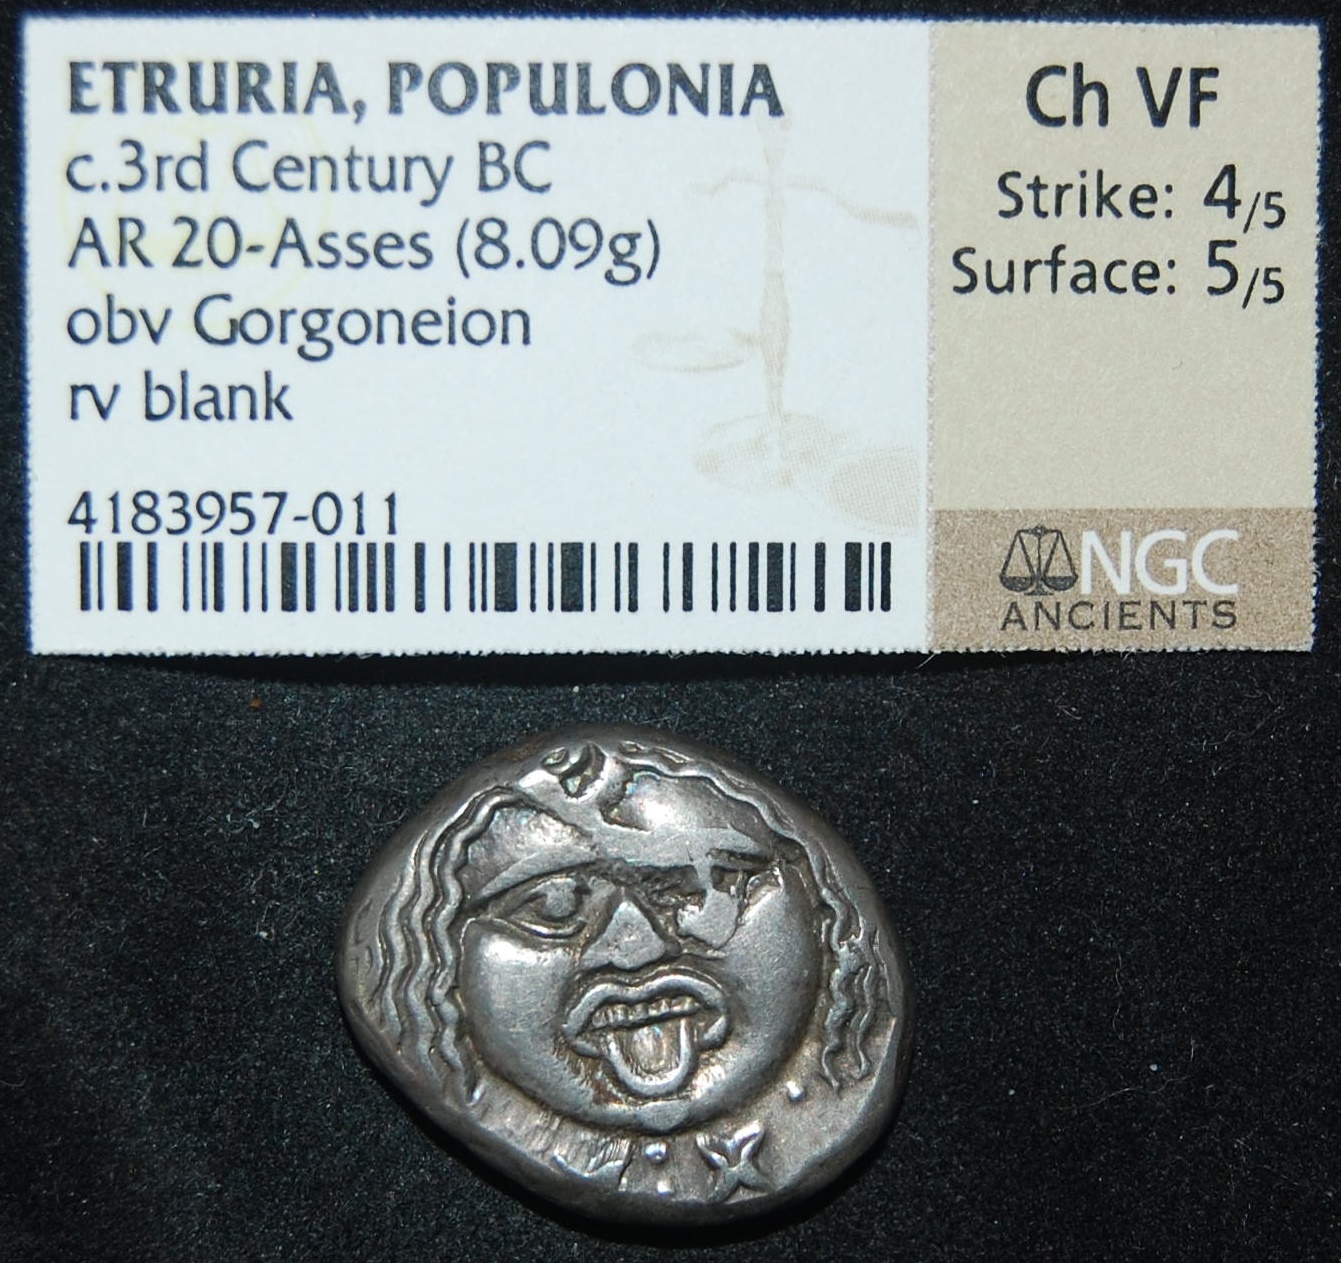 Etruria Populonia 3rd C BCE AR 20 As 8-1g Metus Blank NGC Cert HN 152 Obv.JPG